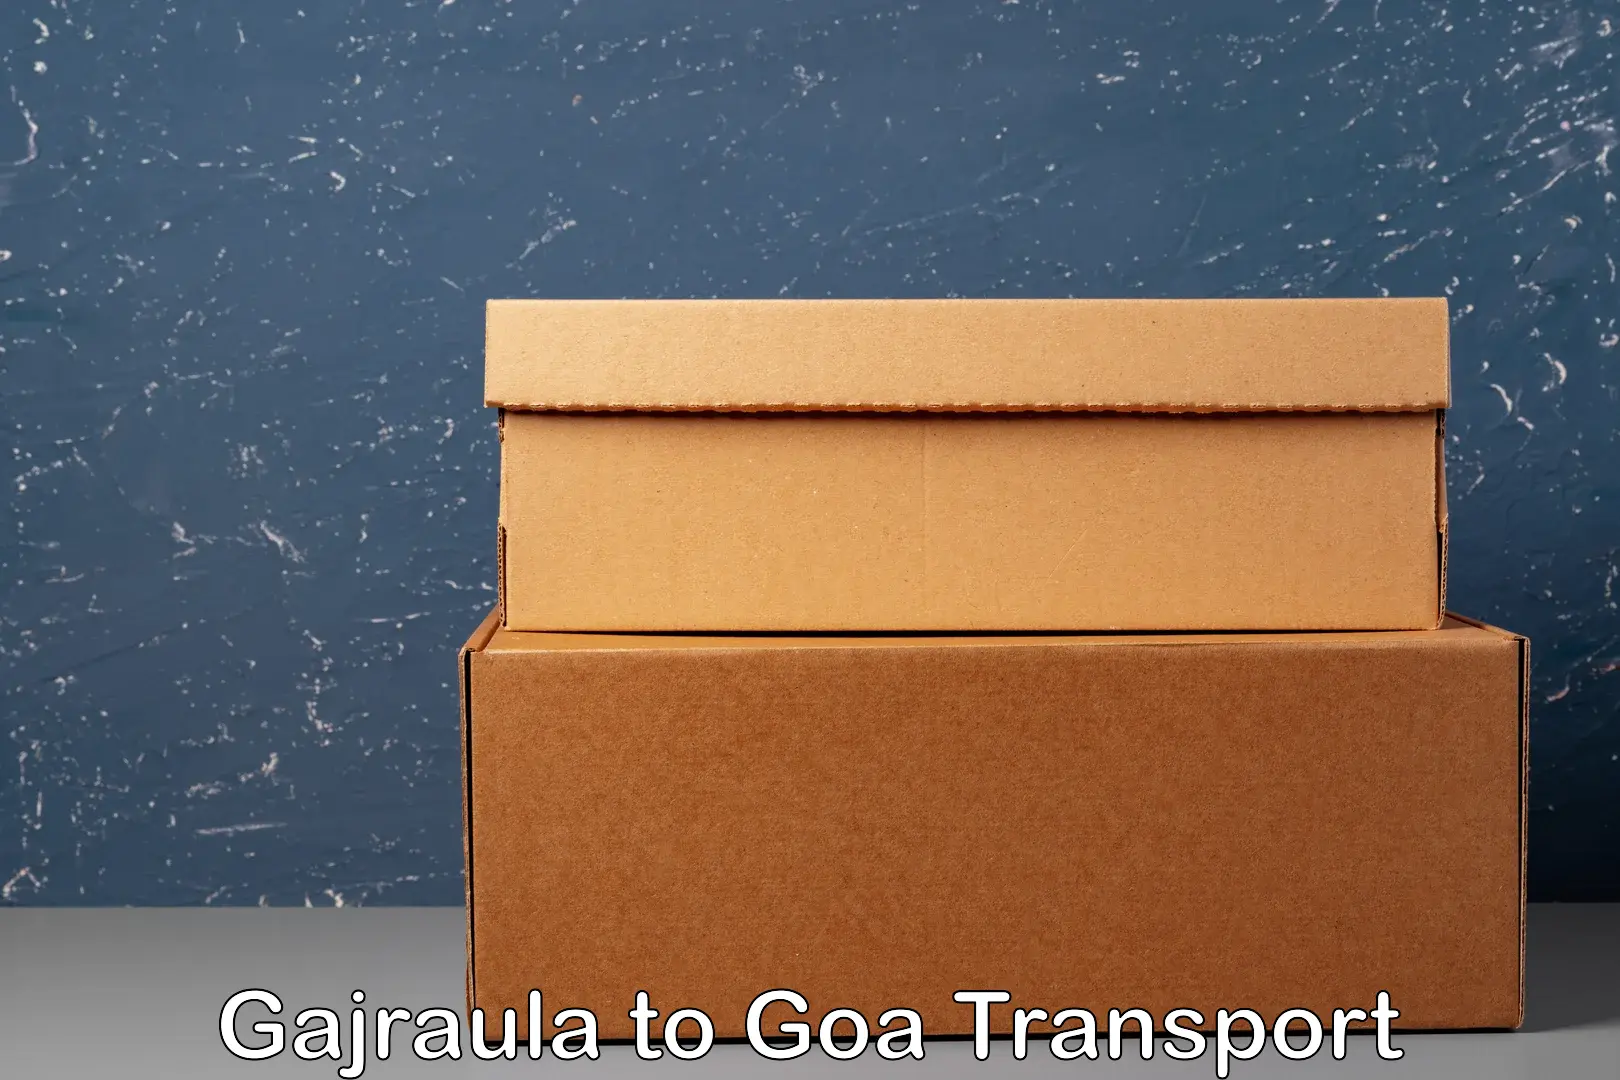 Bike transport service Gajraula to Mormugao Port